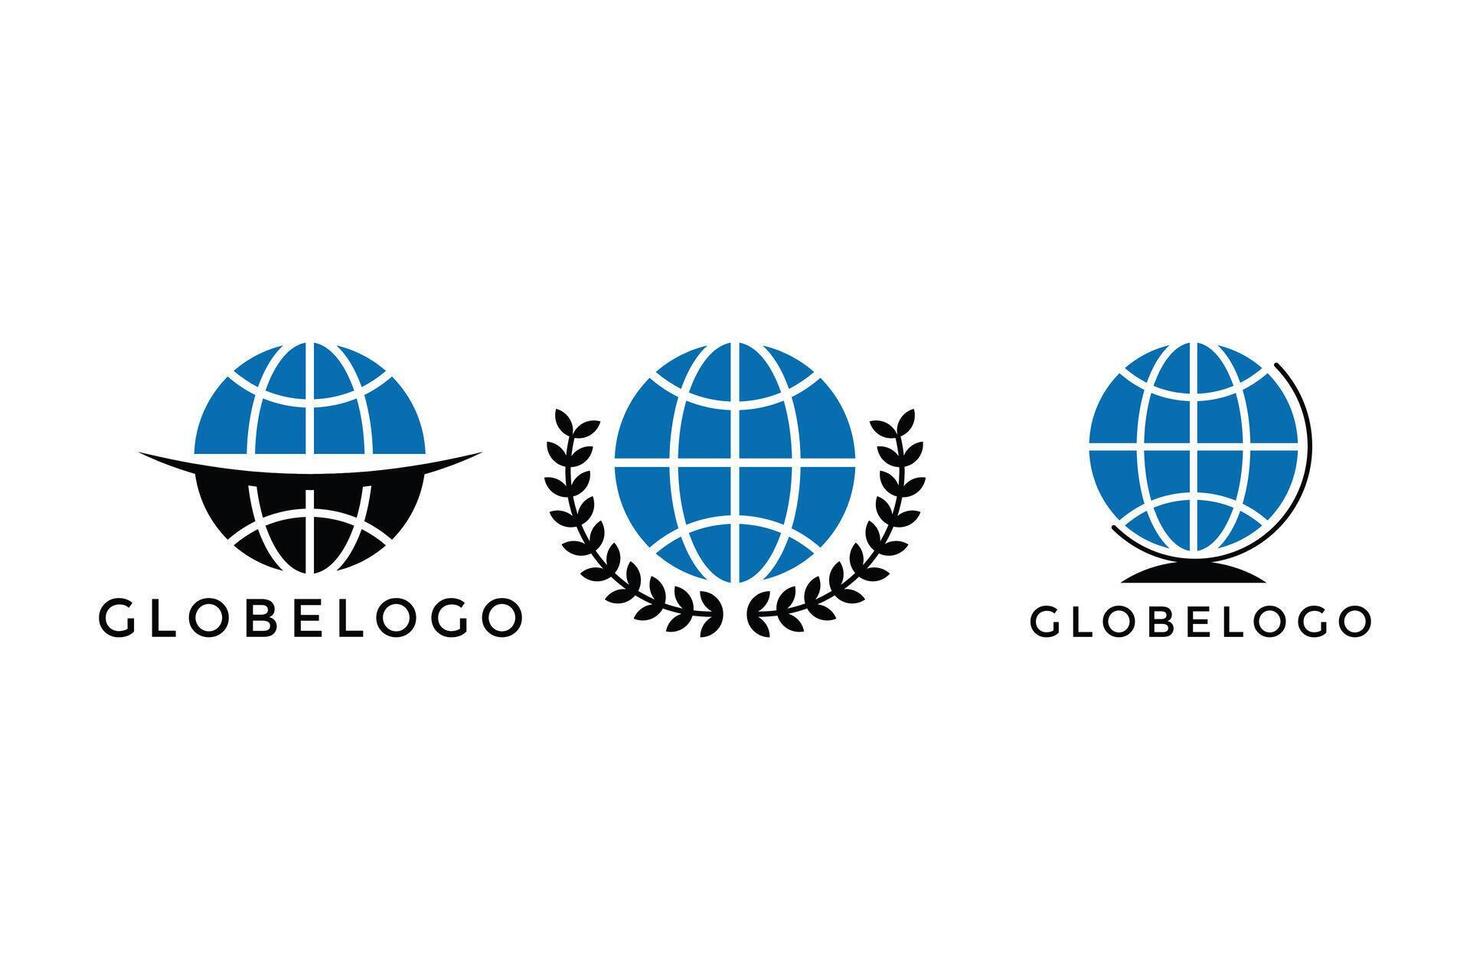 Globe logo design concept creative idea, globe logo design set collection vector